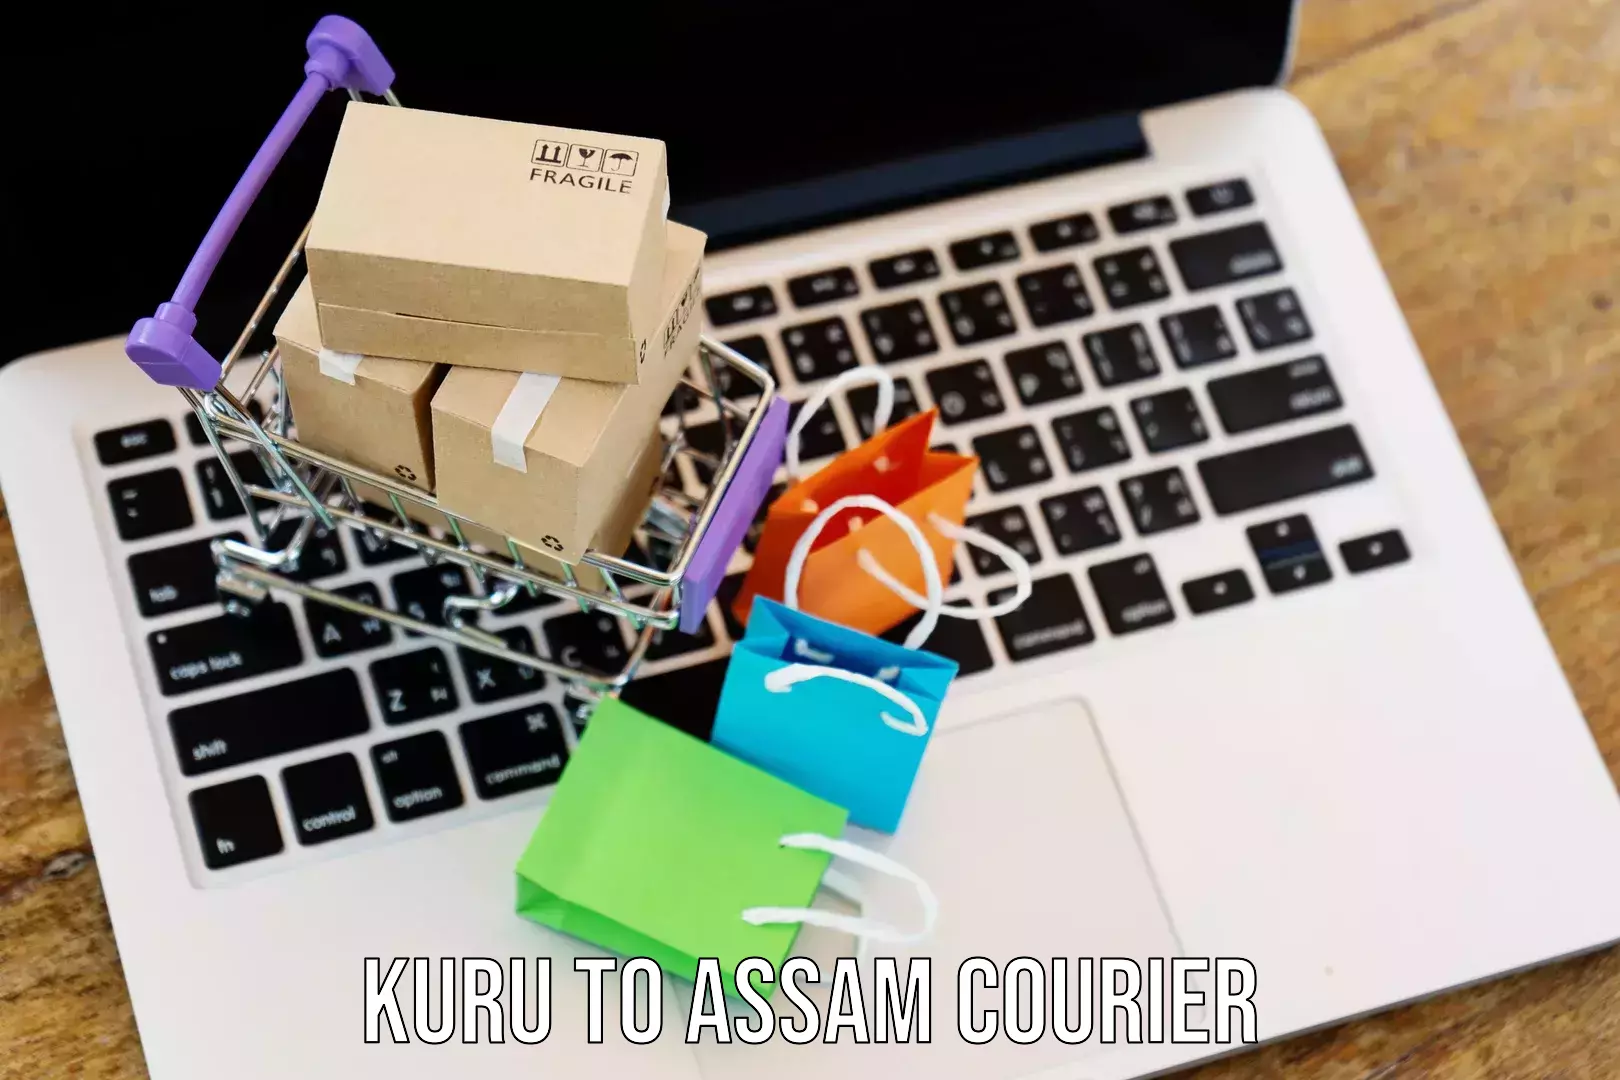 Tracking updates Kuru to Assam